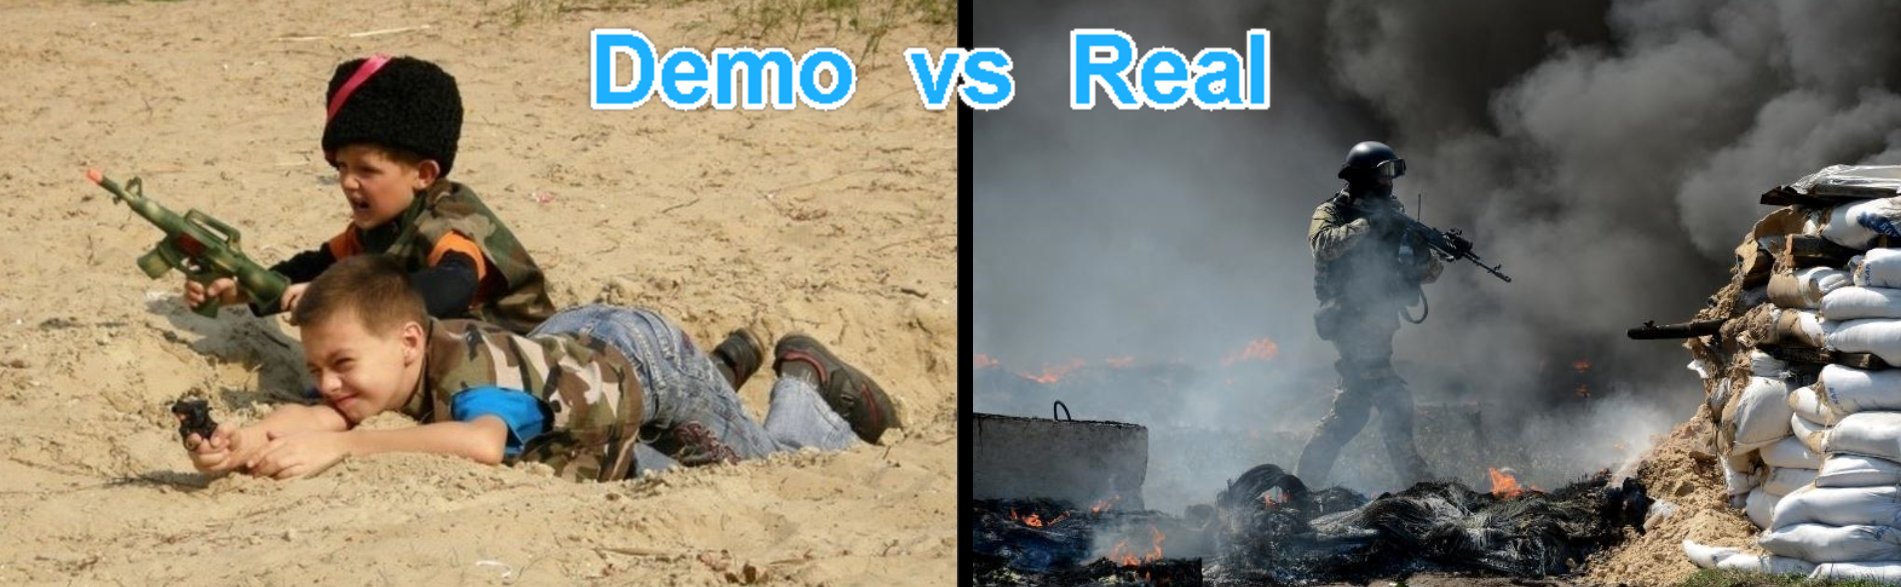 Demo vs Real